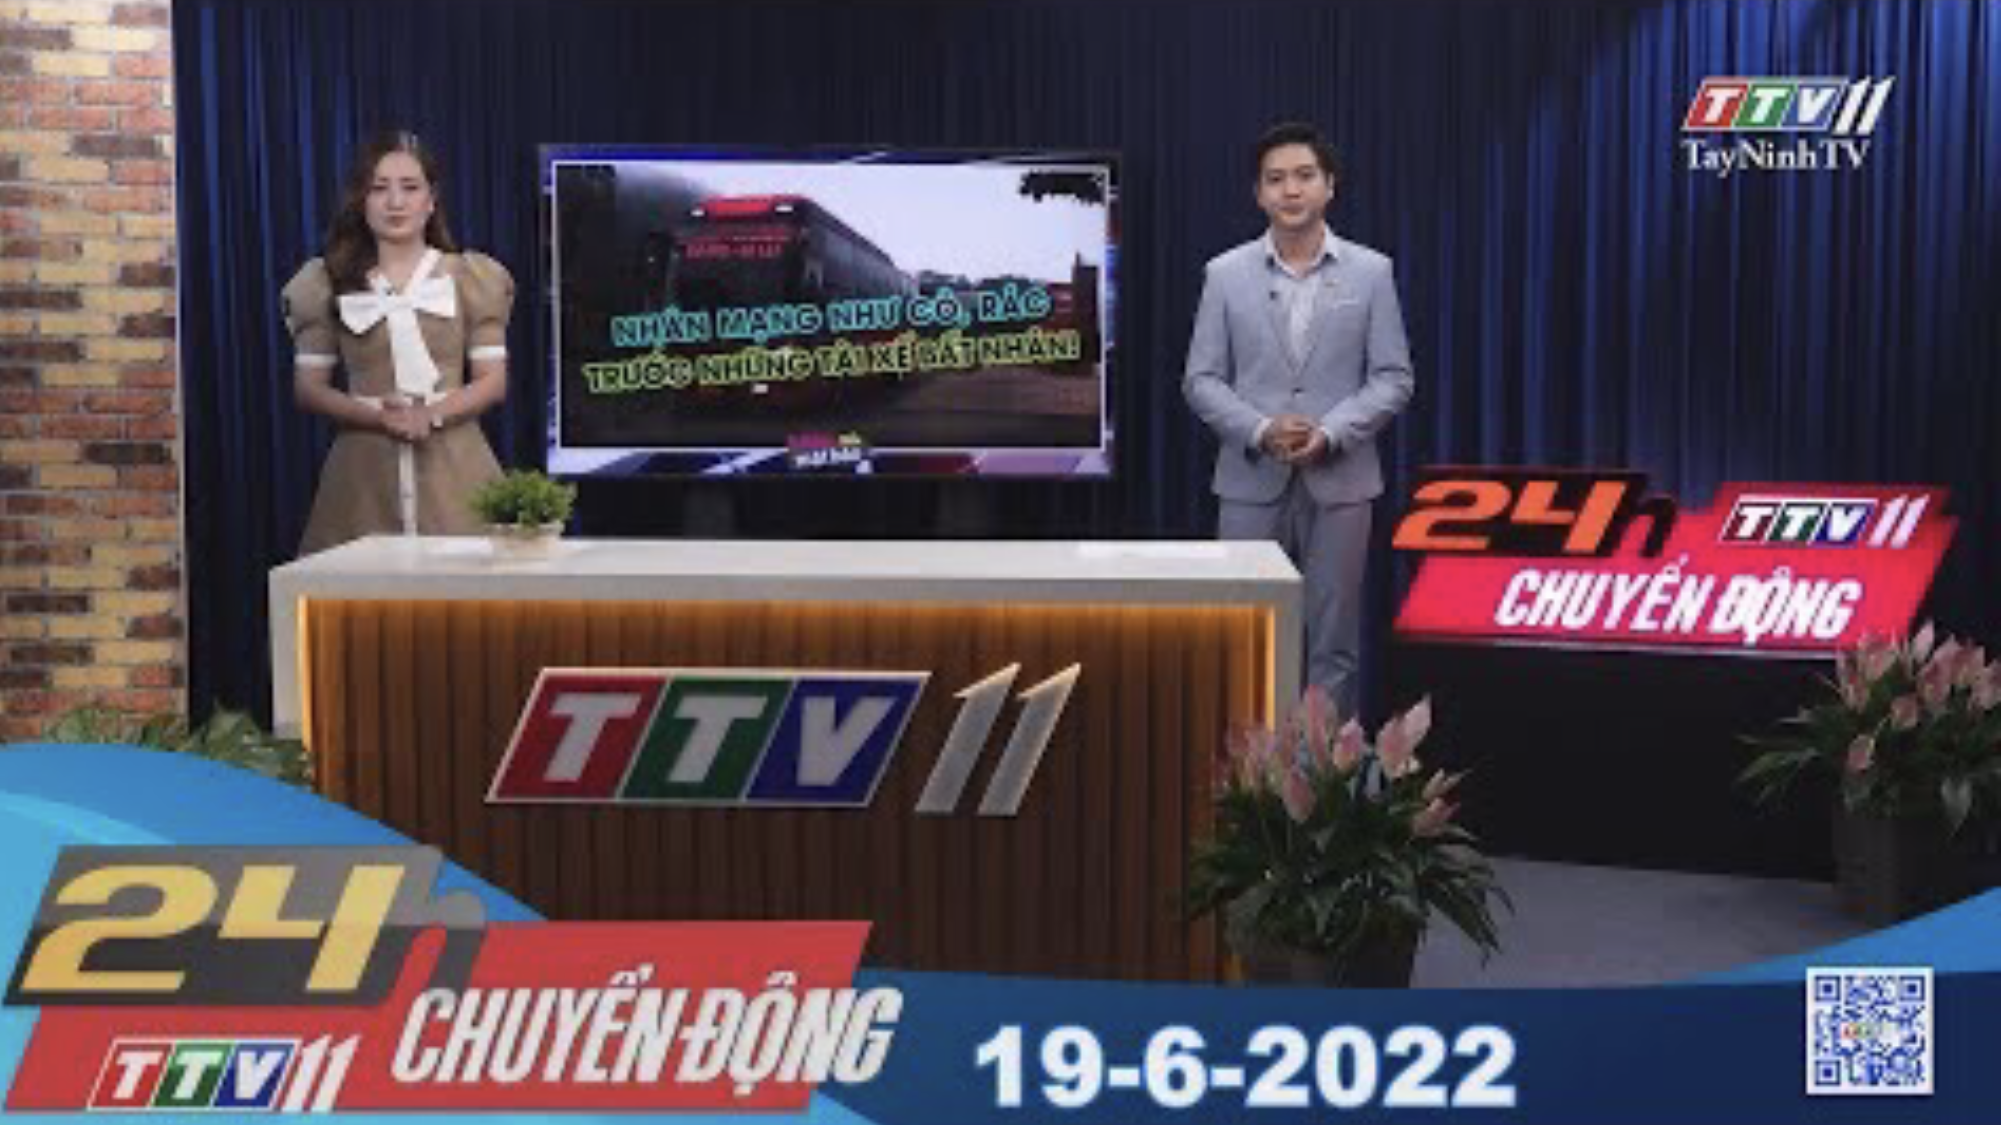 24h Chuyển động 19-6-2022 | Tin tức hôm nay | TayNinhTV